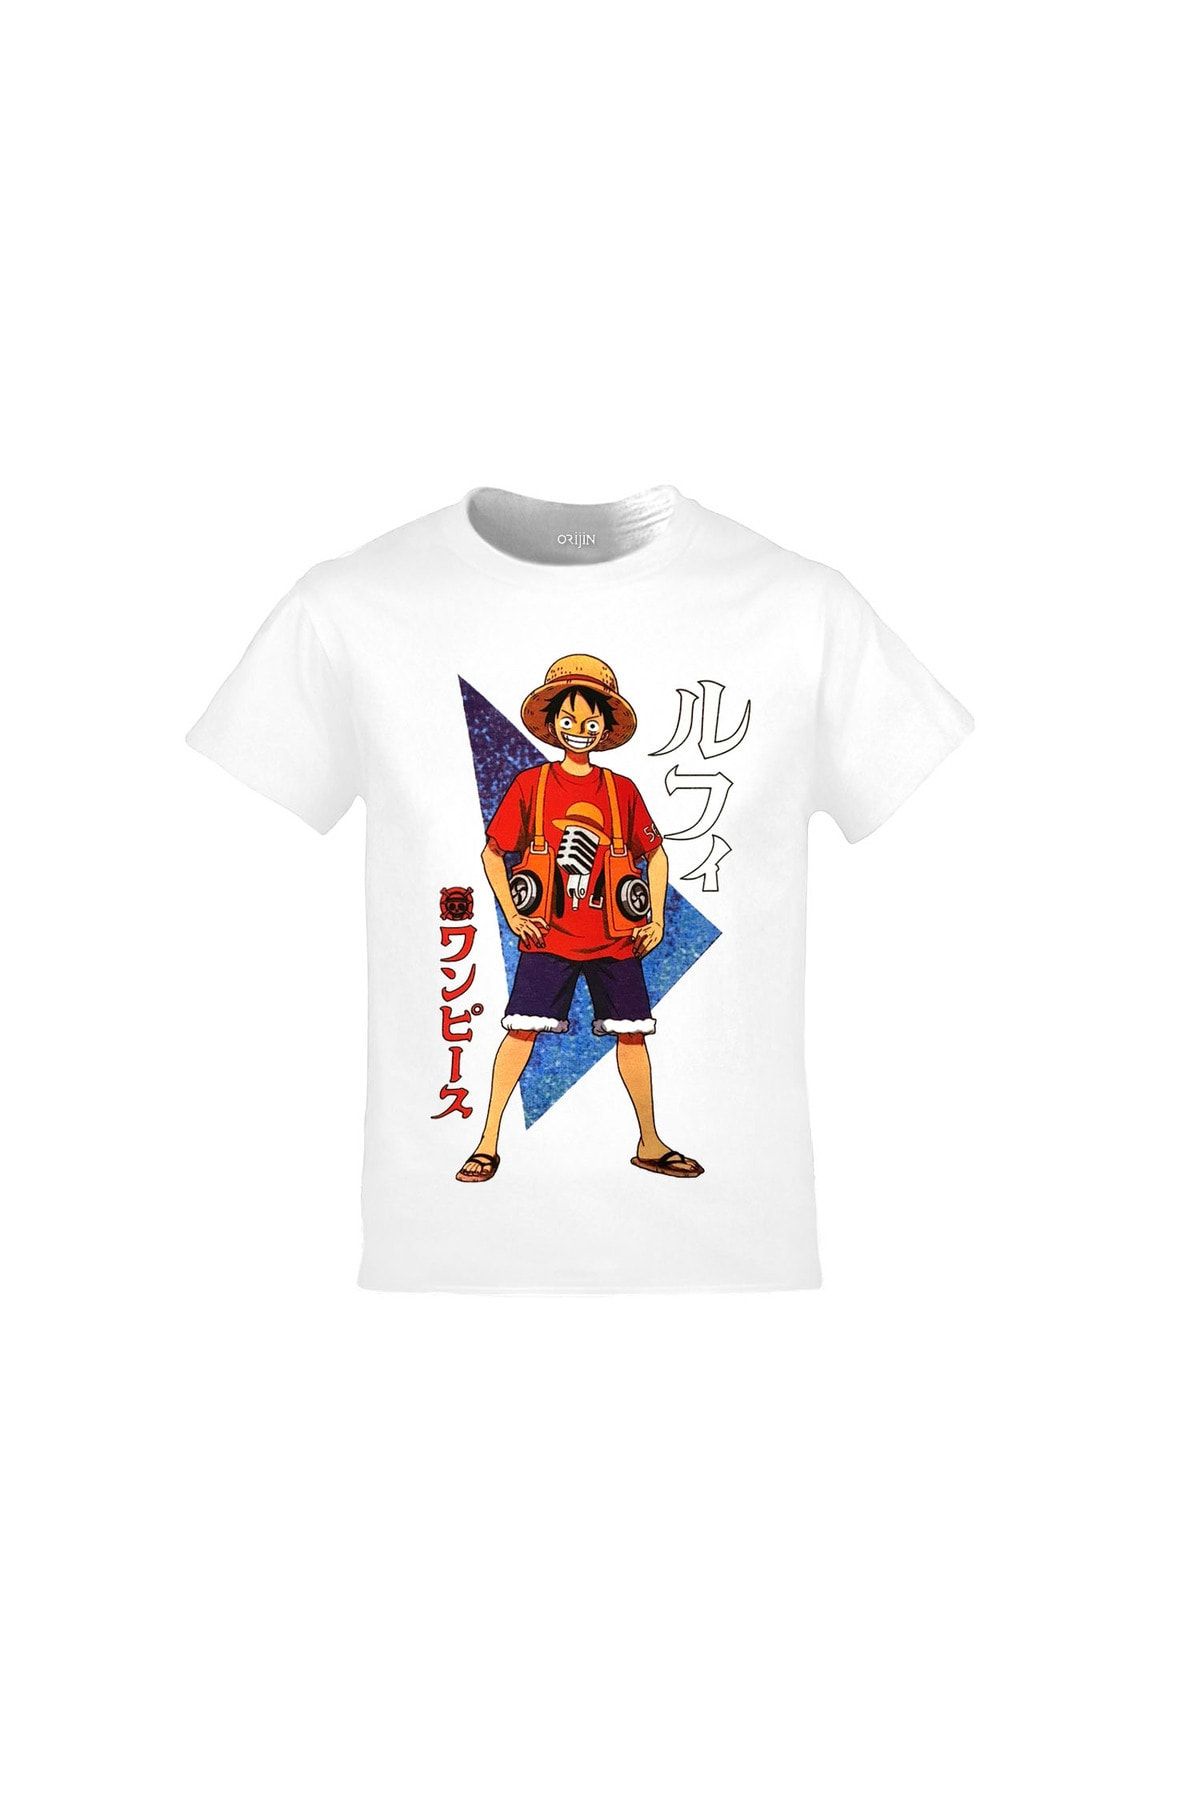 Orijin Tekstil One Piece Monkey D. Luffy Baskılı Beyaz Çocuk Tshirt